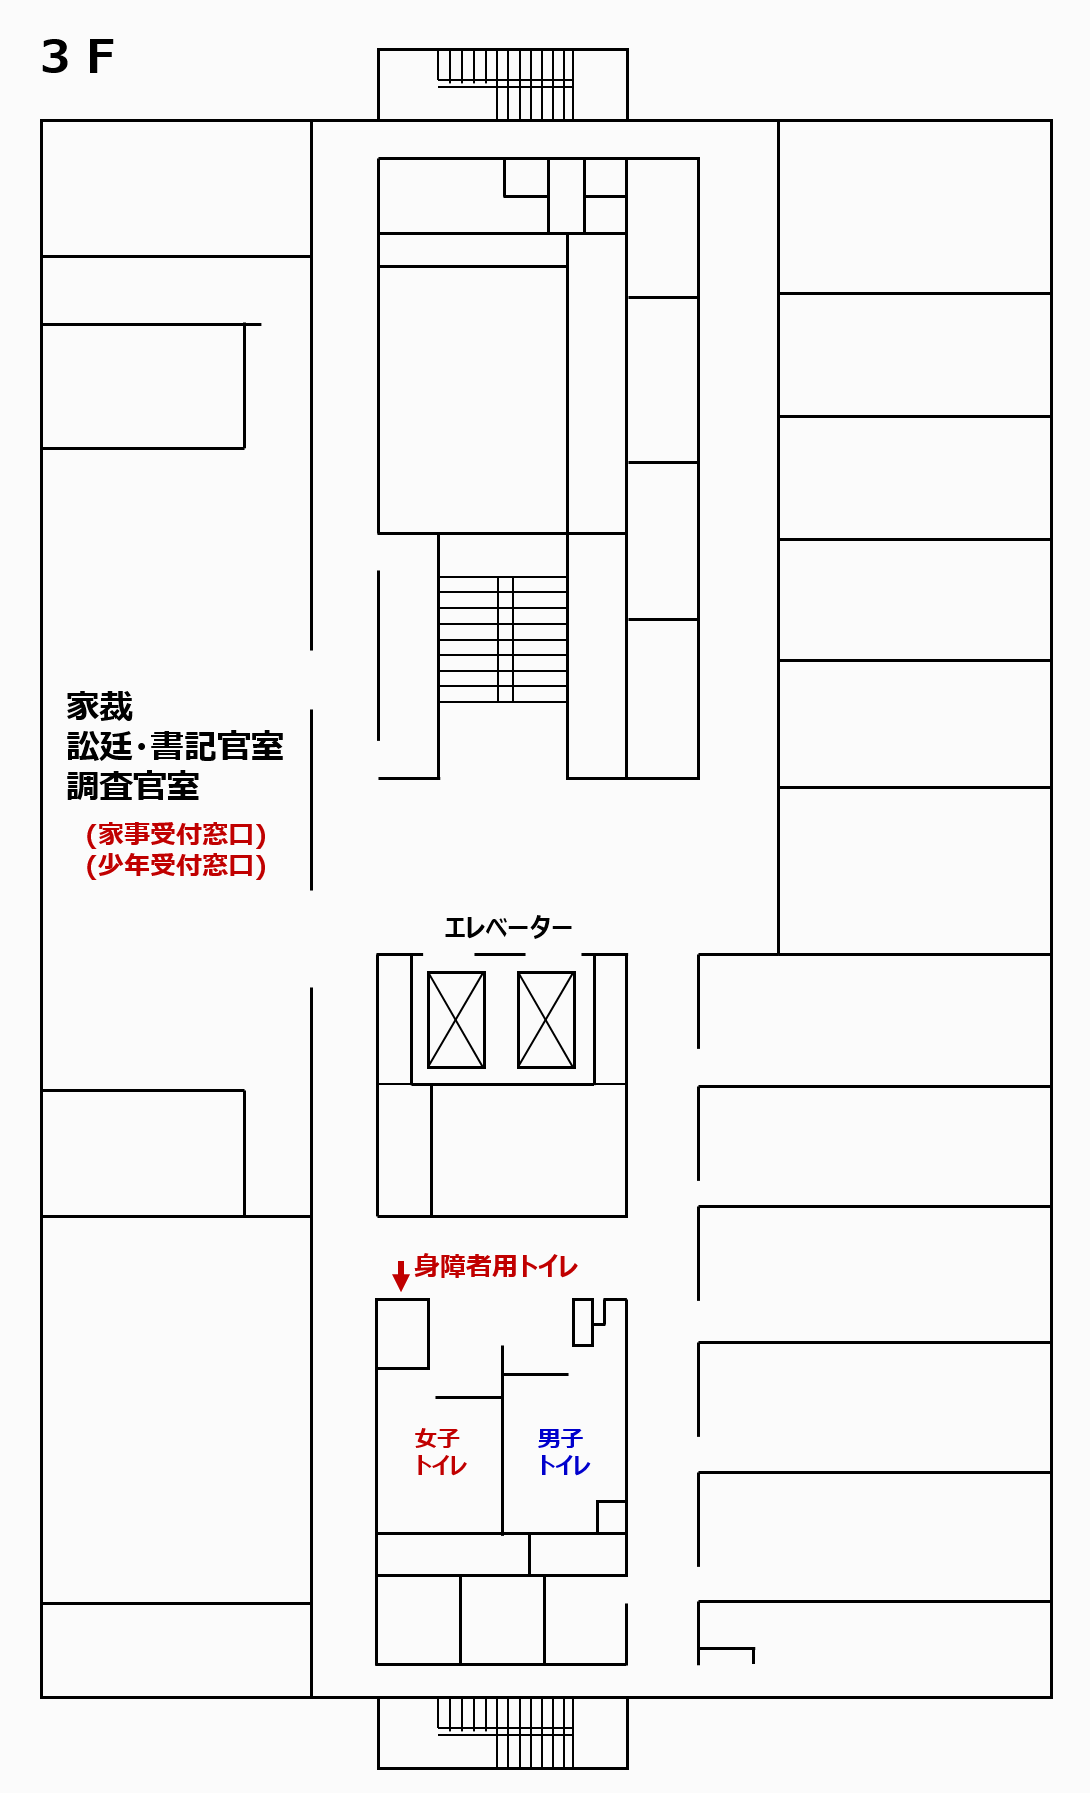 図版：函館家庭裁判所 3階の窓口案内